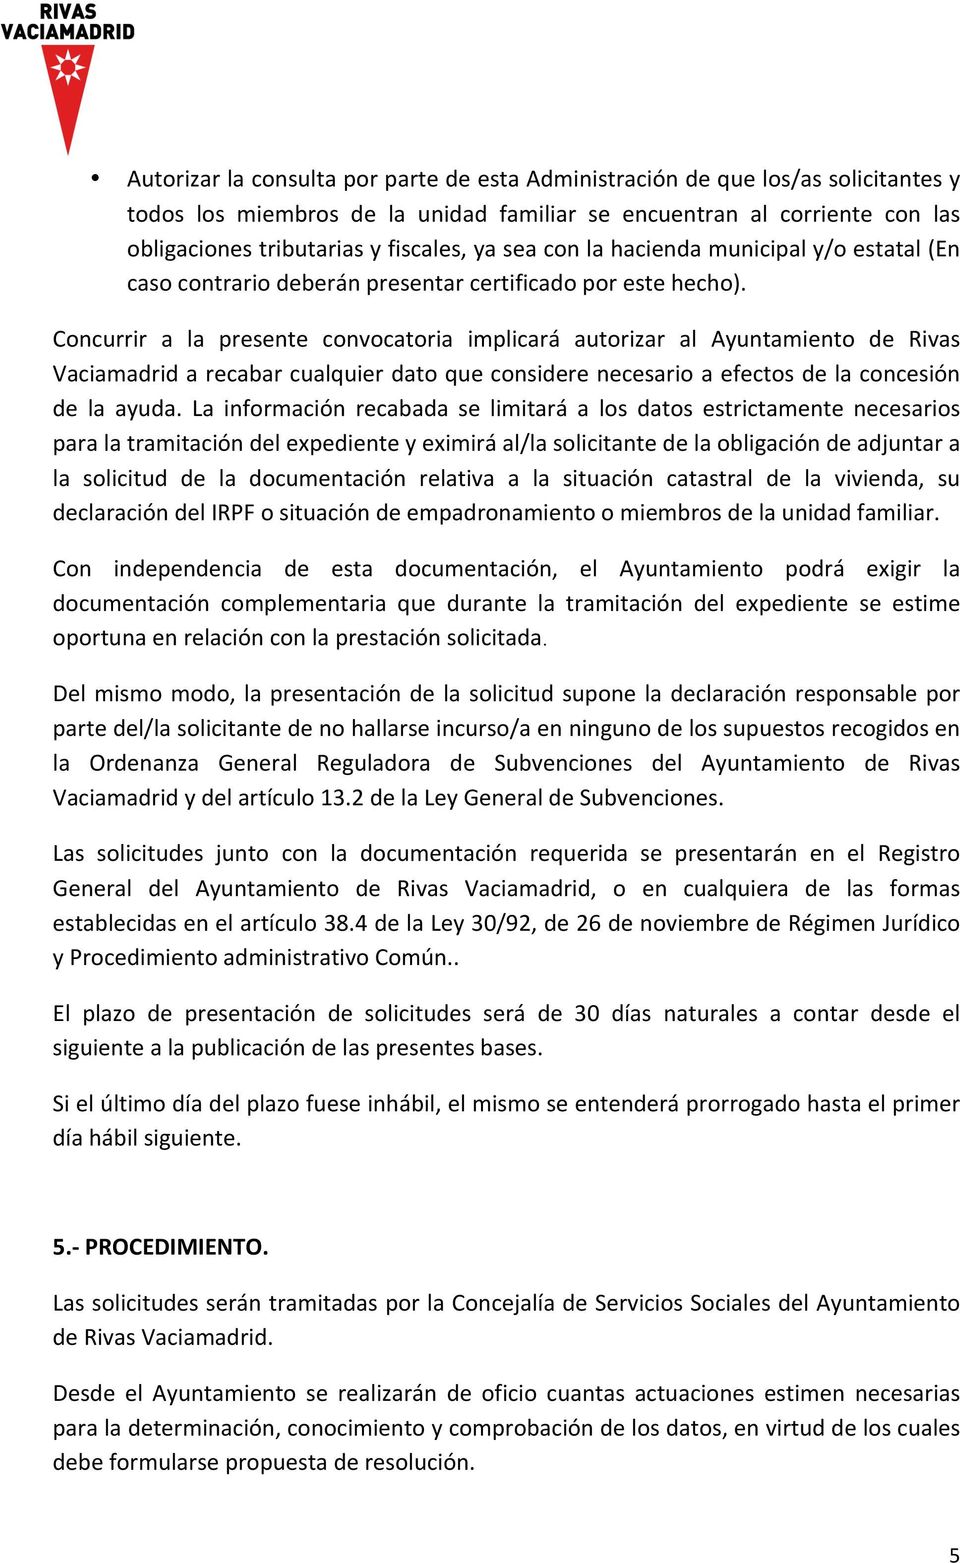 Concurrir a la presente convocatoria implicará autorizar al Ayuntamiento de Rivas Vaciamadrid a recabar cualquier dato que considere necesario a efectos de la concesión de la ayuda.